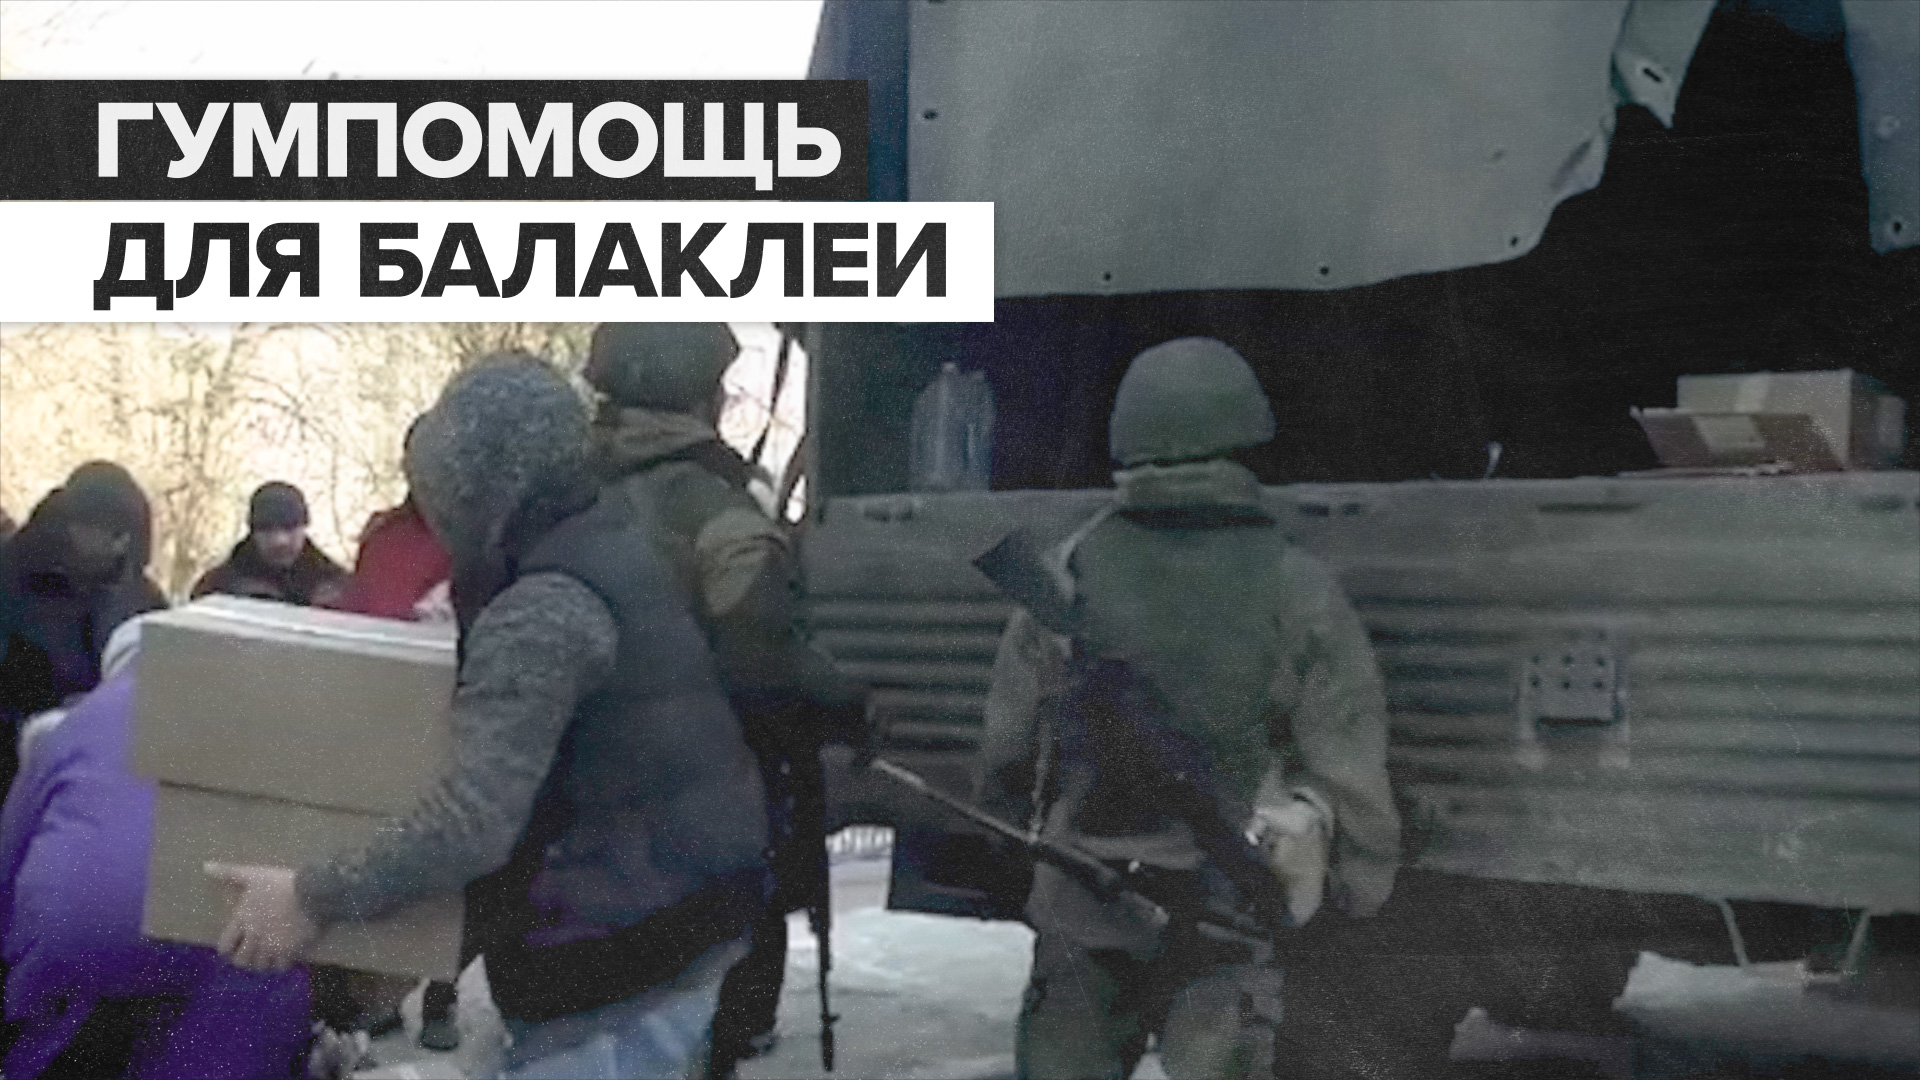 Российские военные доставили около 8 тонн гумпомощи в Балаклею